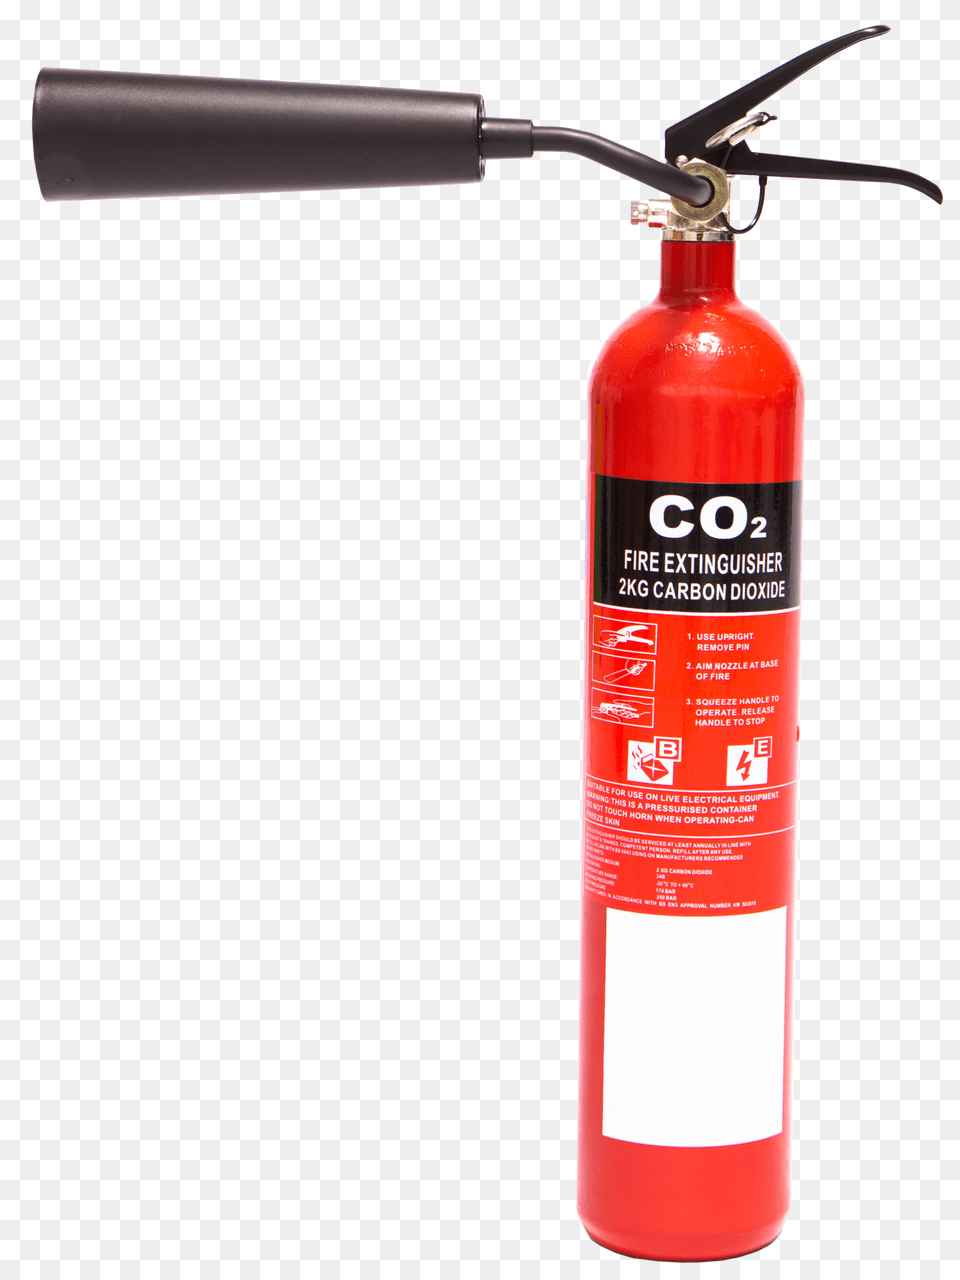 Extinguisher, Cylinder, Smoke Pipe Free Png